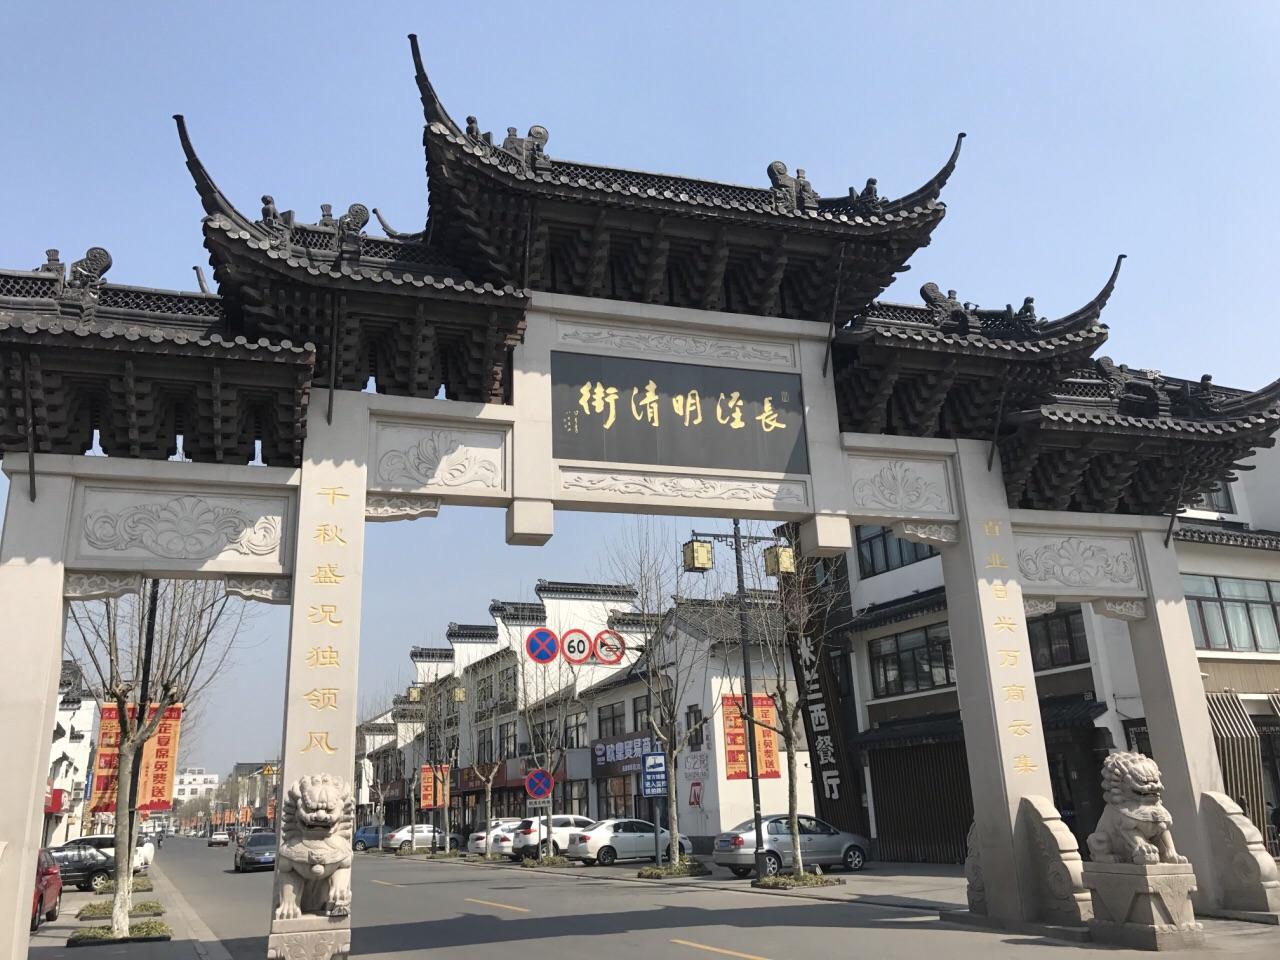 长泾老街位于江阴长泾镇明清商业街东侧,是一条千米石板街